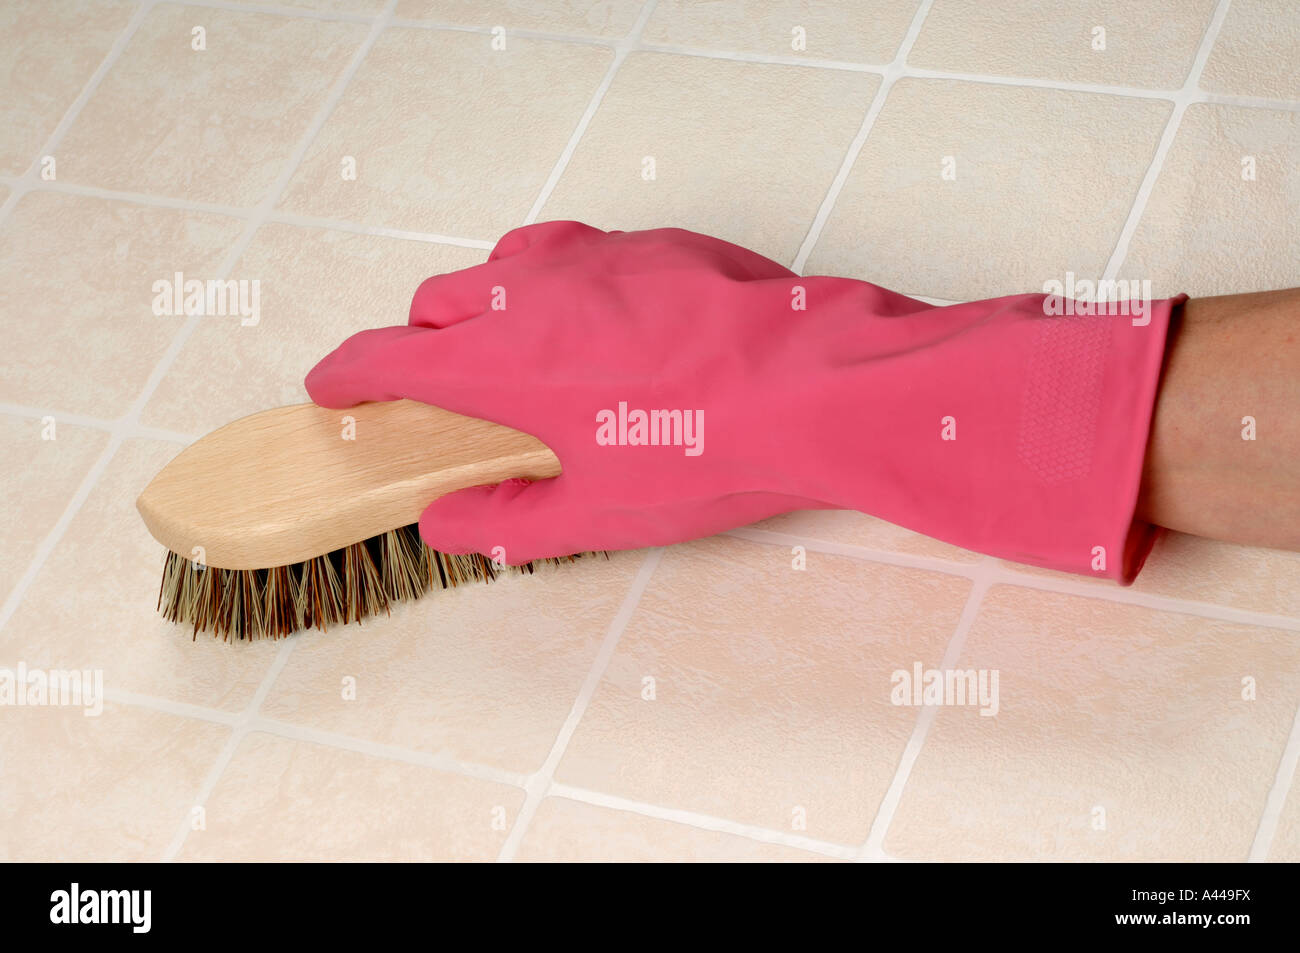 Scrubbing brush pink glove Stock Photo